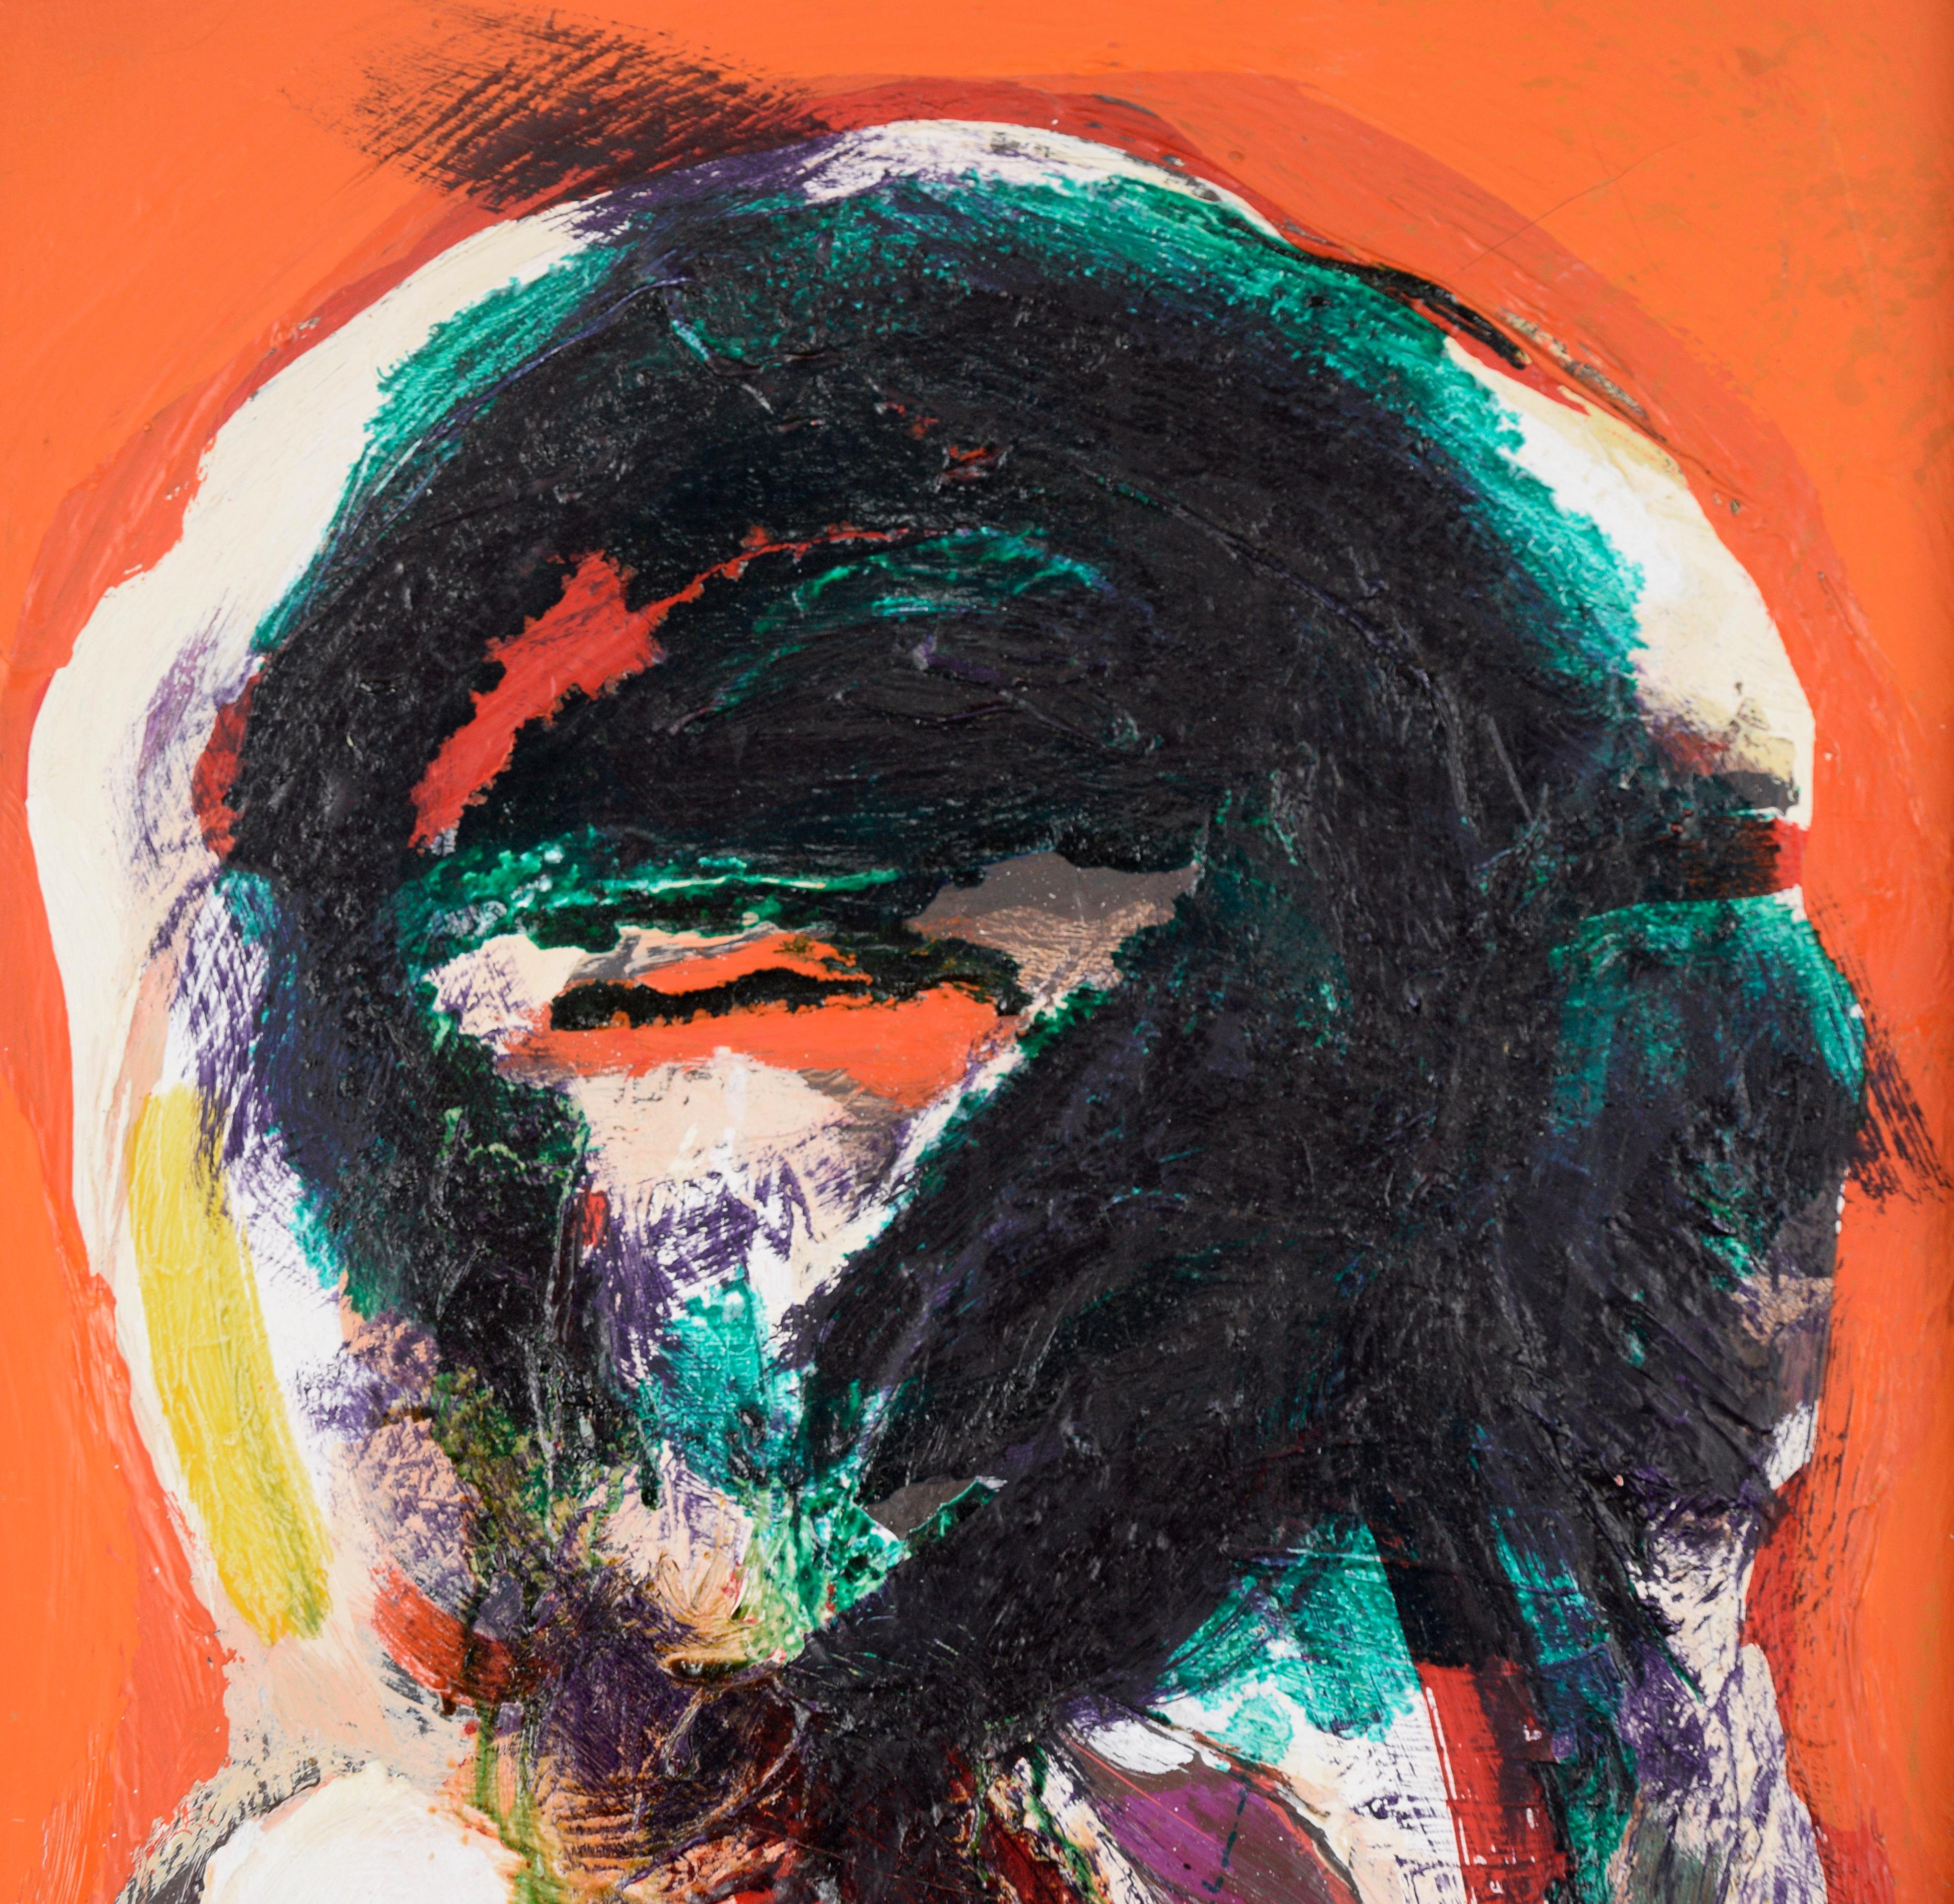 Abstrakte expressionistische Komposition auf einem orangefarbenen Feld - Öl auf Leinwand (Abstrakter Expressionismus), Painting, von Peter Witwer